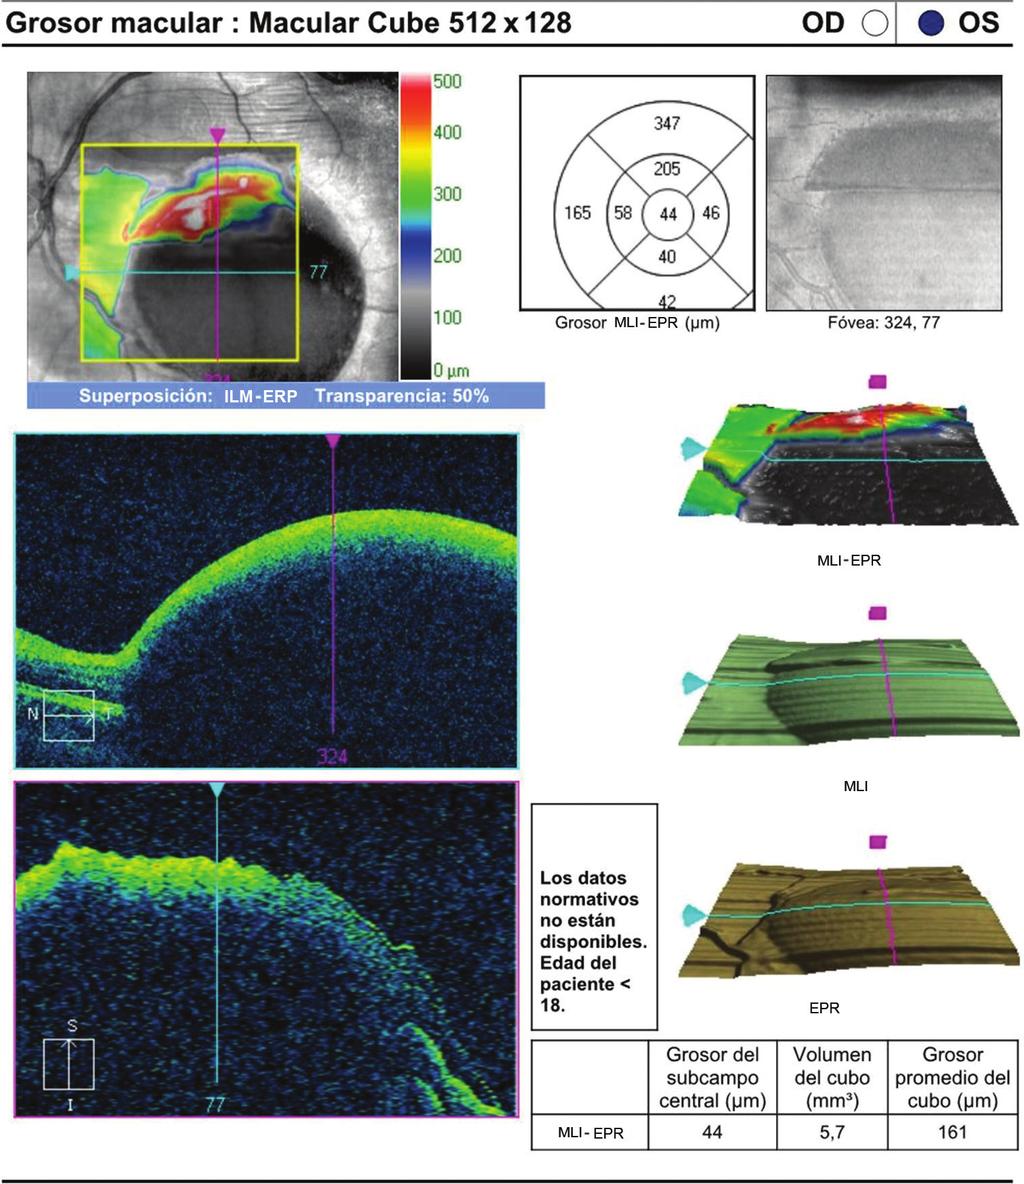 J.A. Fajardo-Sánchez, et al.: Retinopatía de Valsalva secundaria Figura 3. OCT macular que corresponde a la hemorragia premacular vista en retinografías previas.